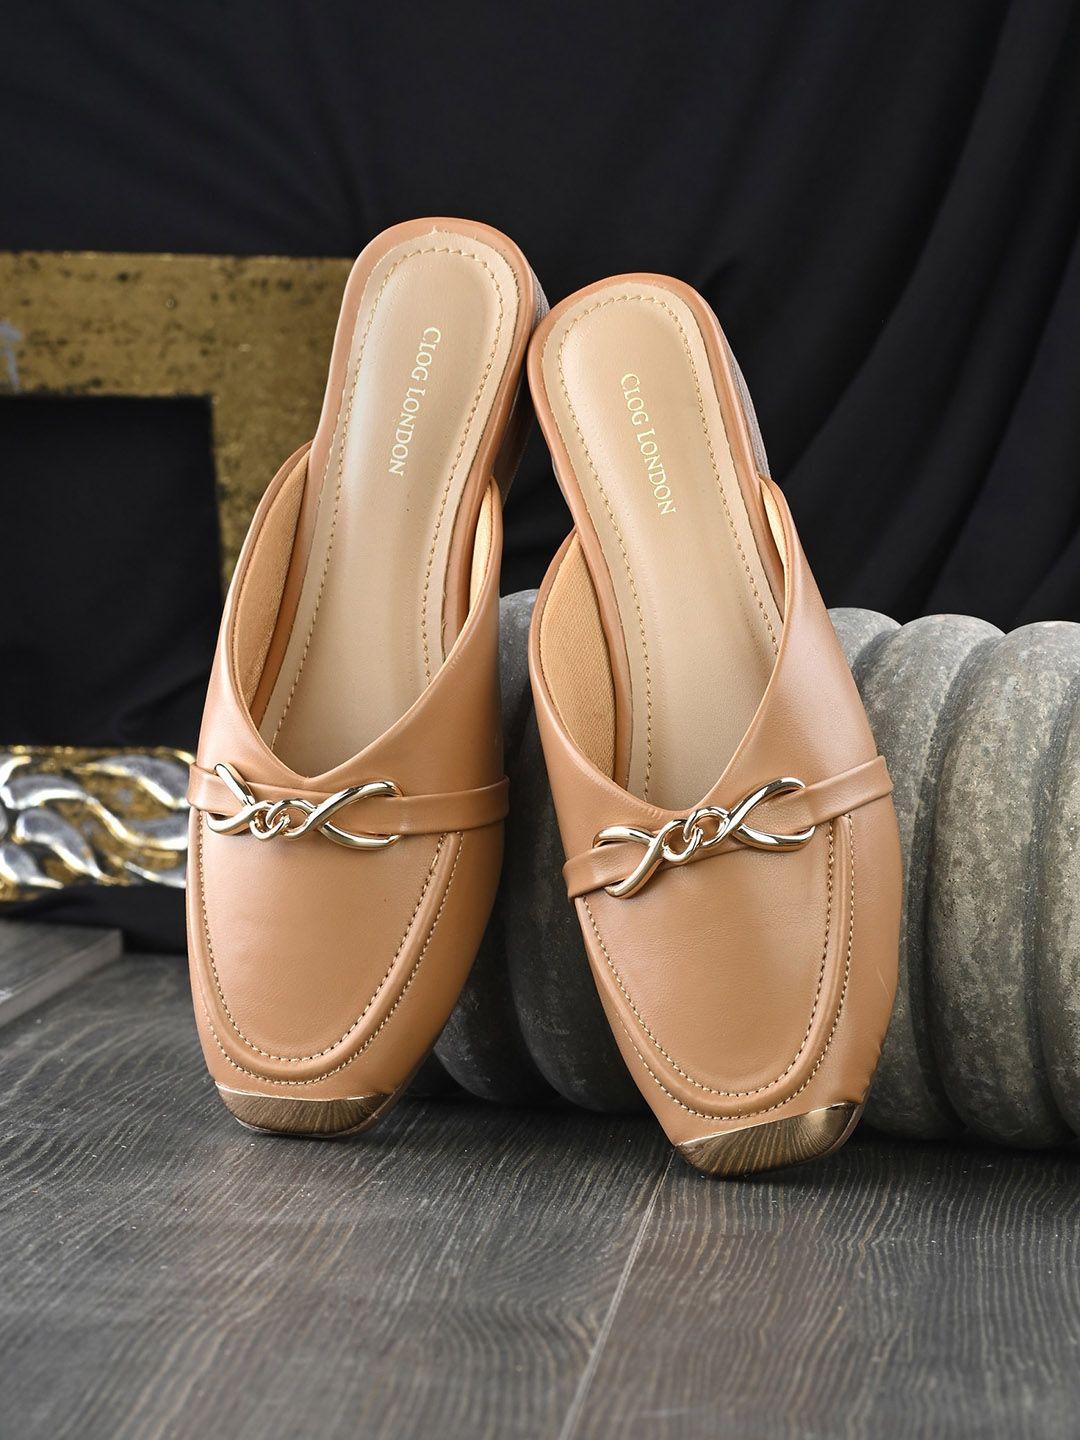 clog london embellished comfort heels mules